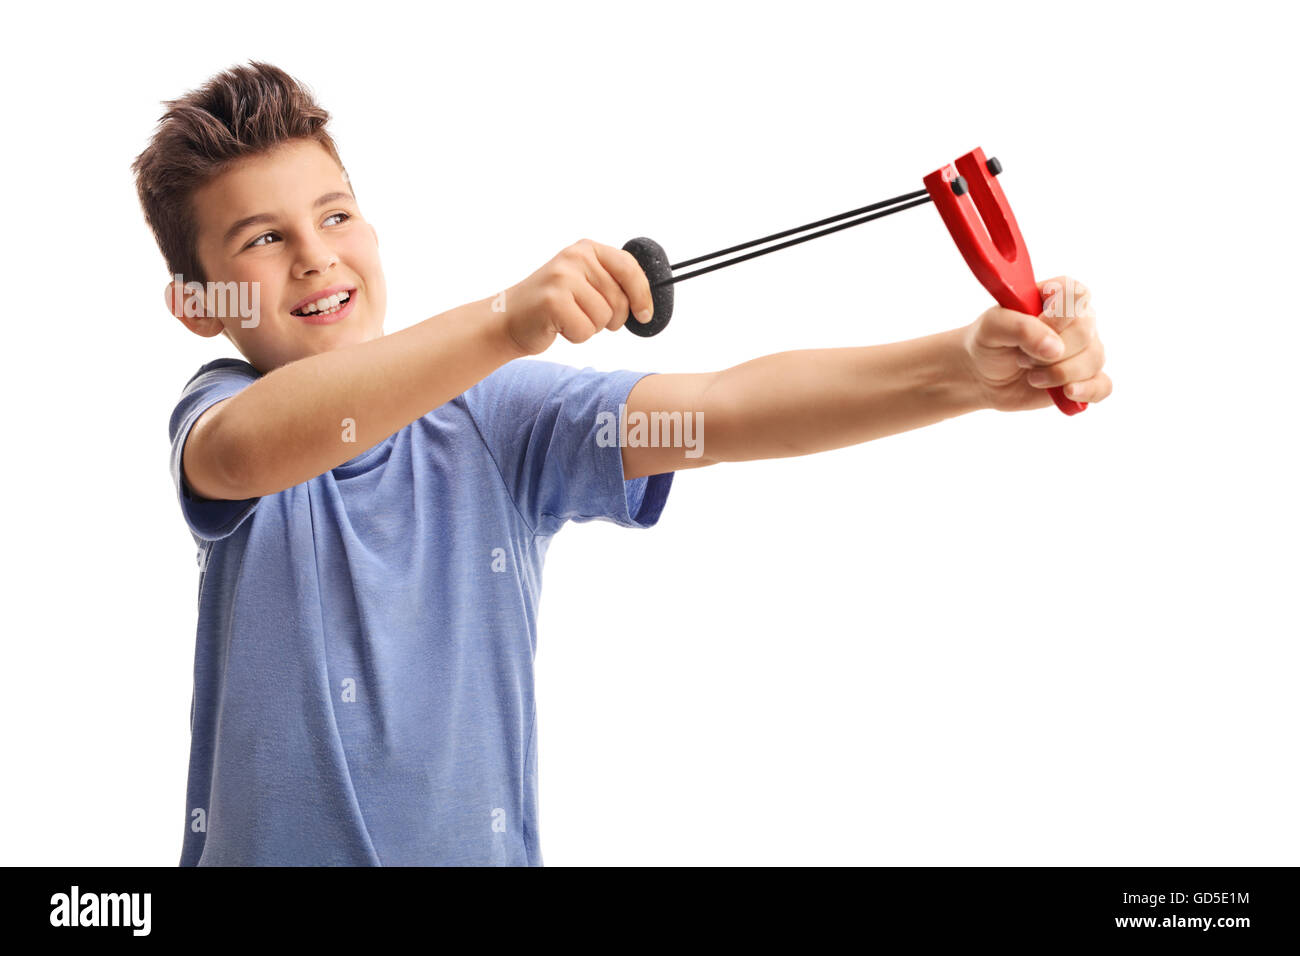 Fröhliches kleines Kind schießen mit einer Steinschleuder isoliert auf weißem Hintergrund Stockfoto